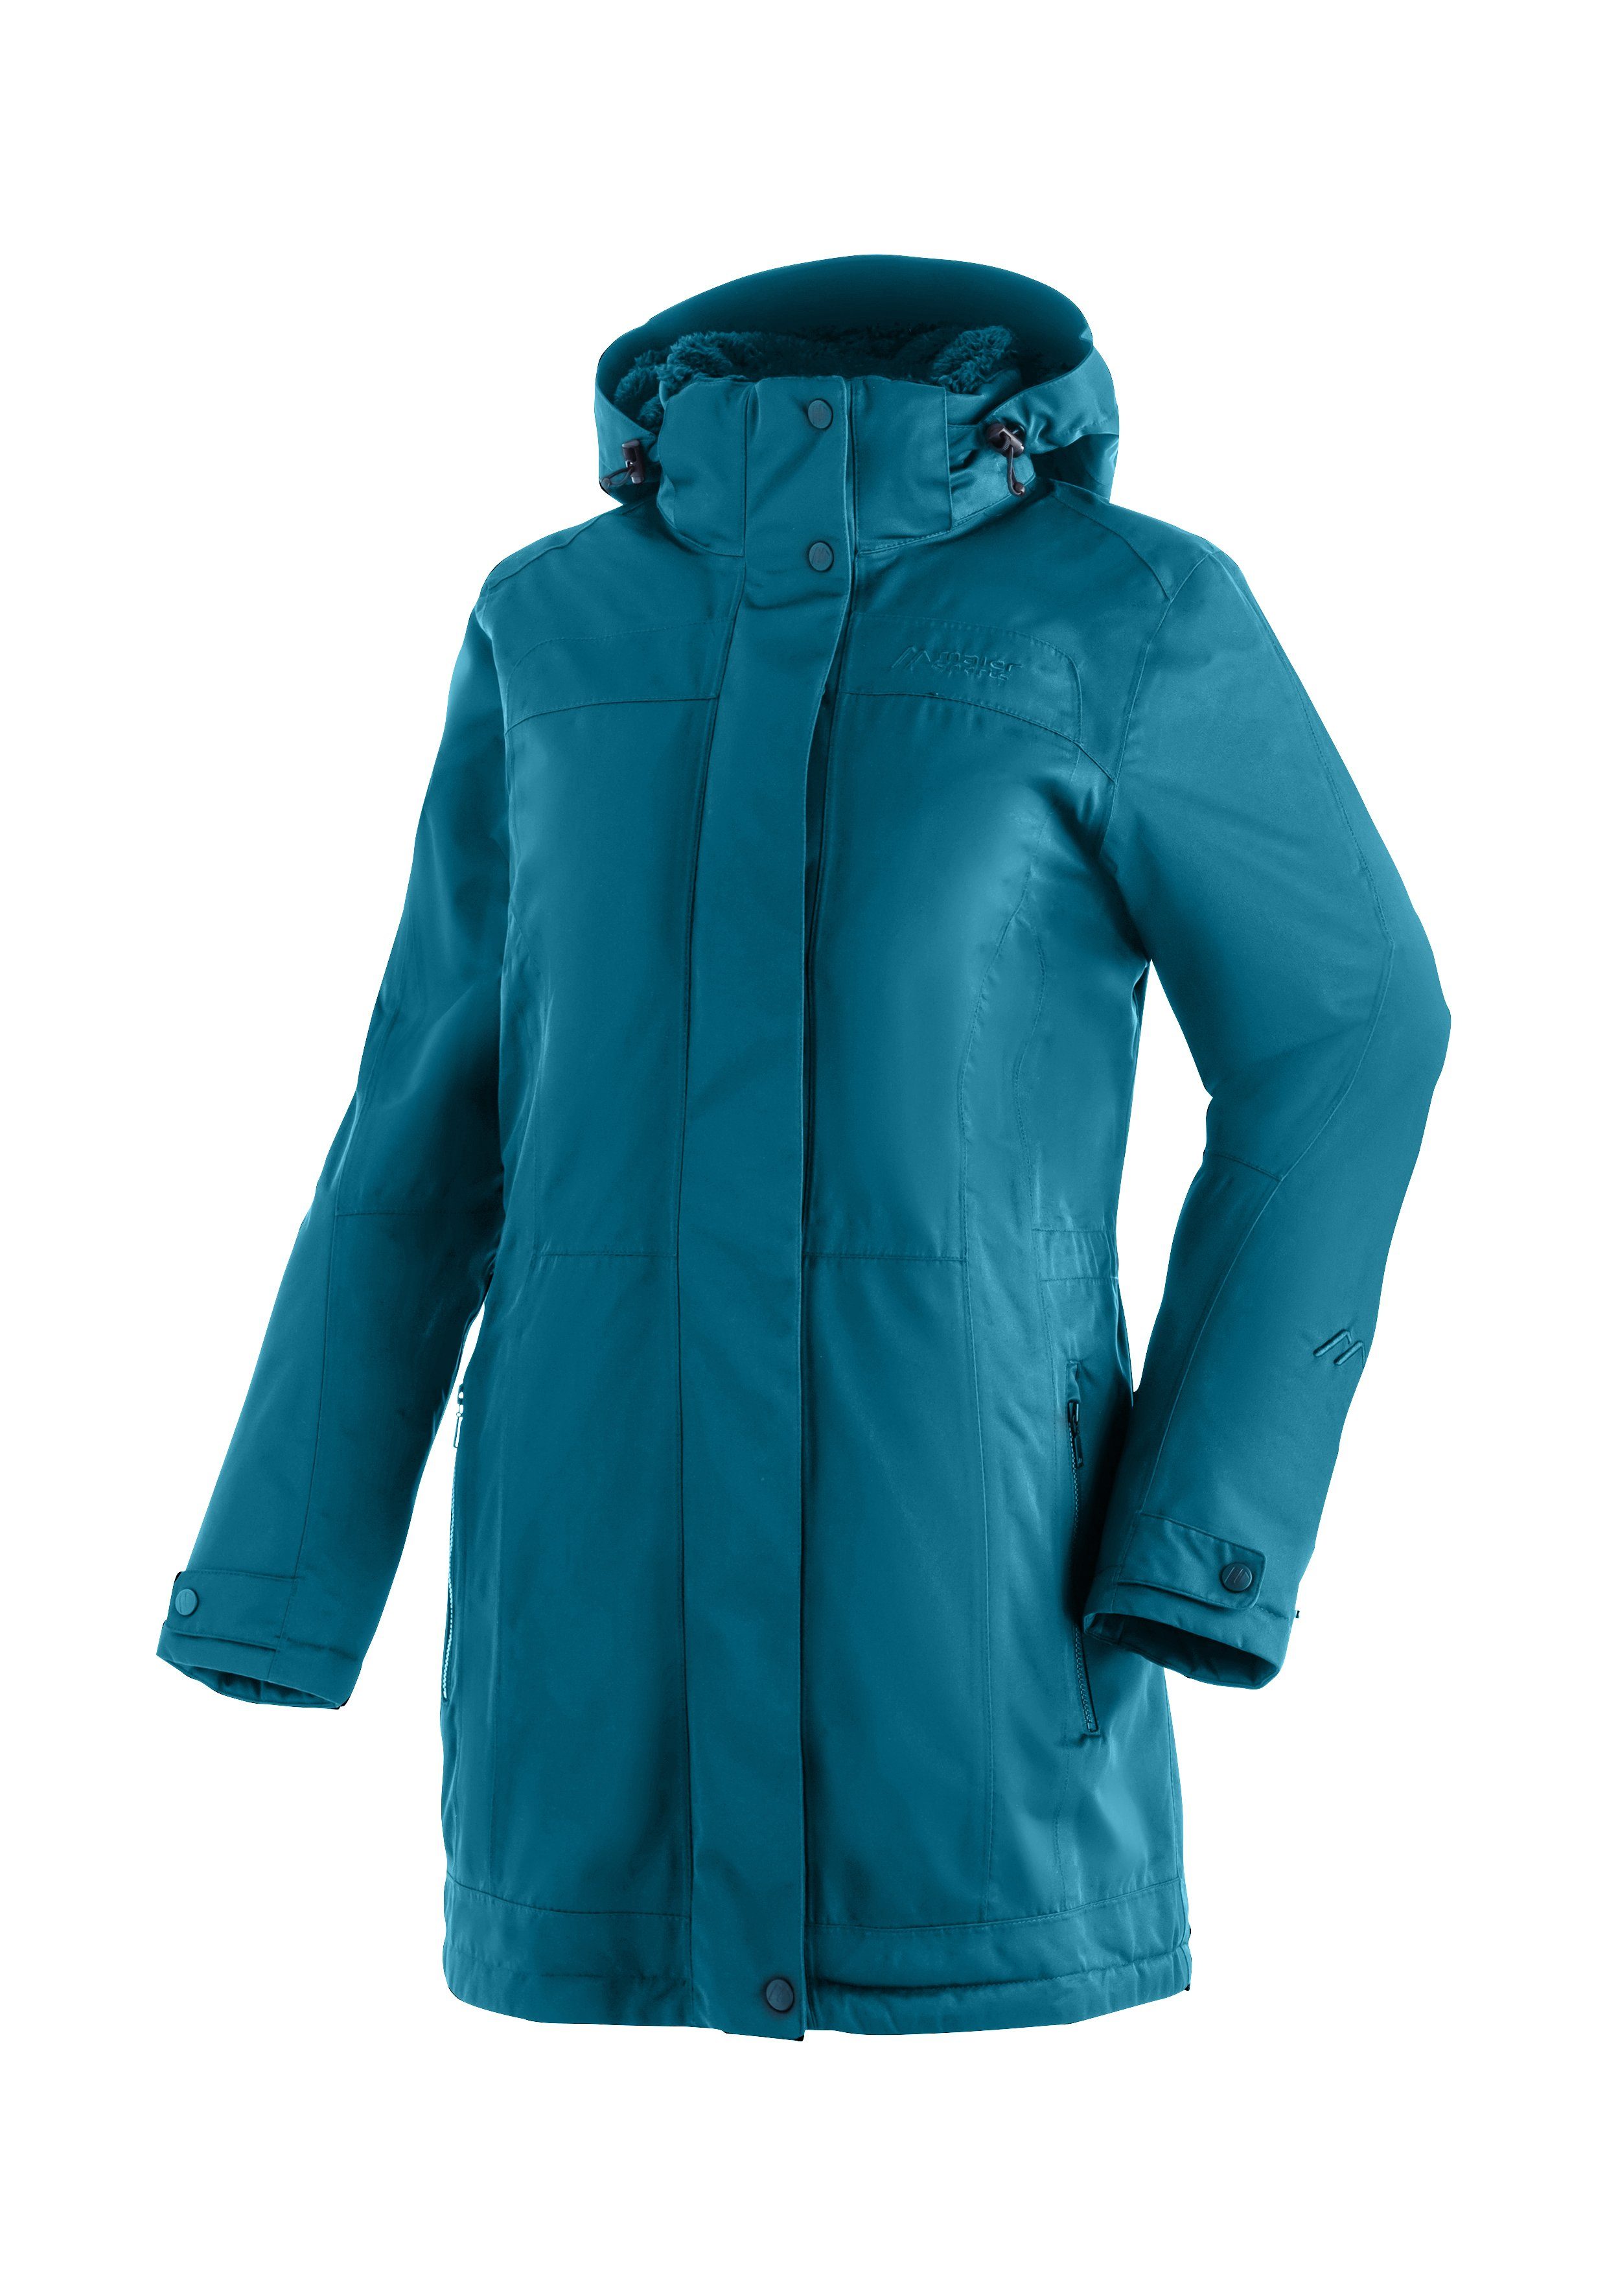 Maier Sports Funktionsjacke Lisa 2 flaschengrün vollem mit Wetterschutz Outdoor-Mantel